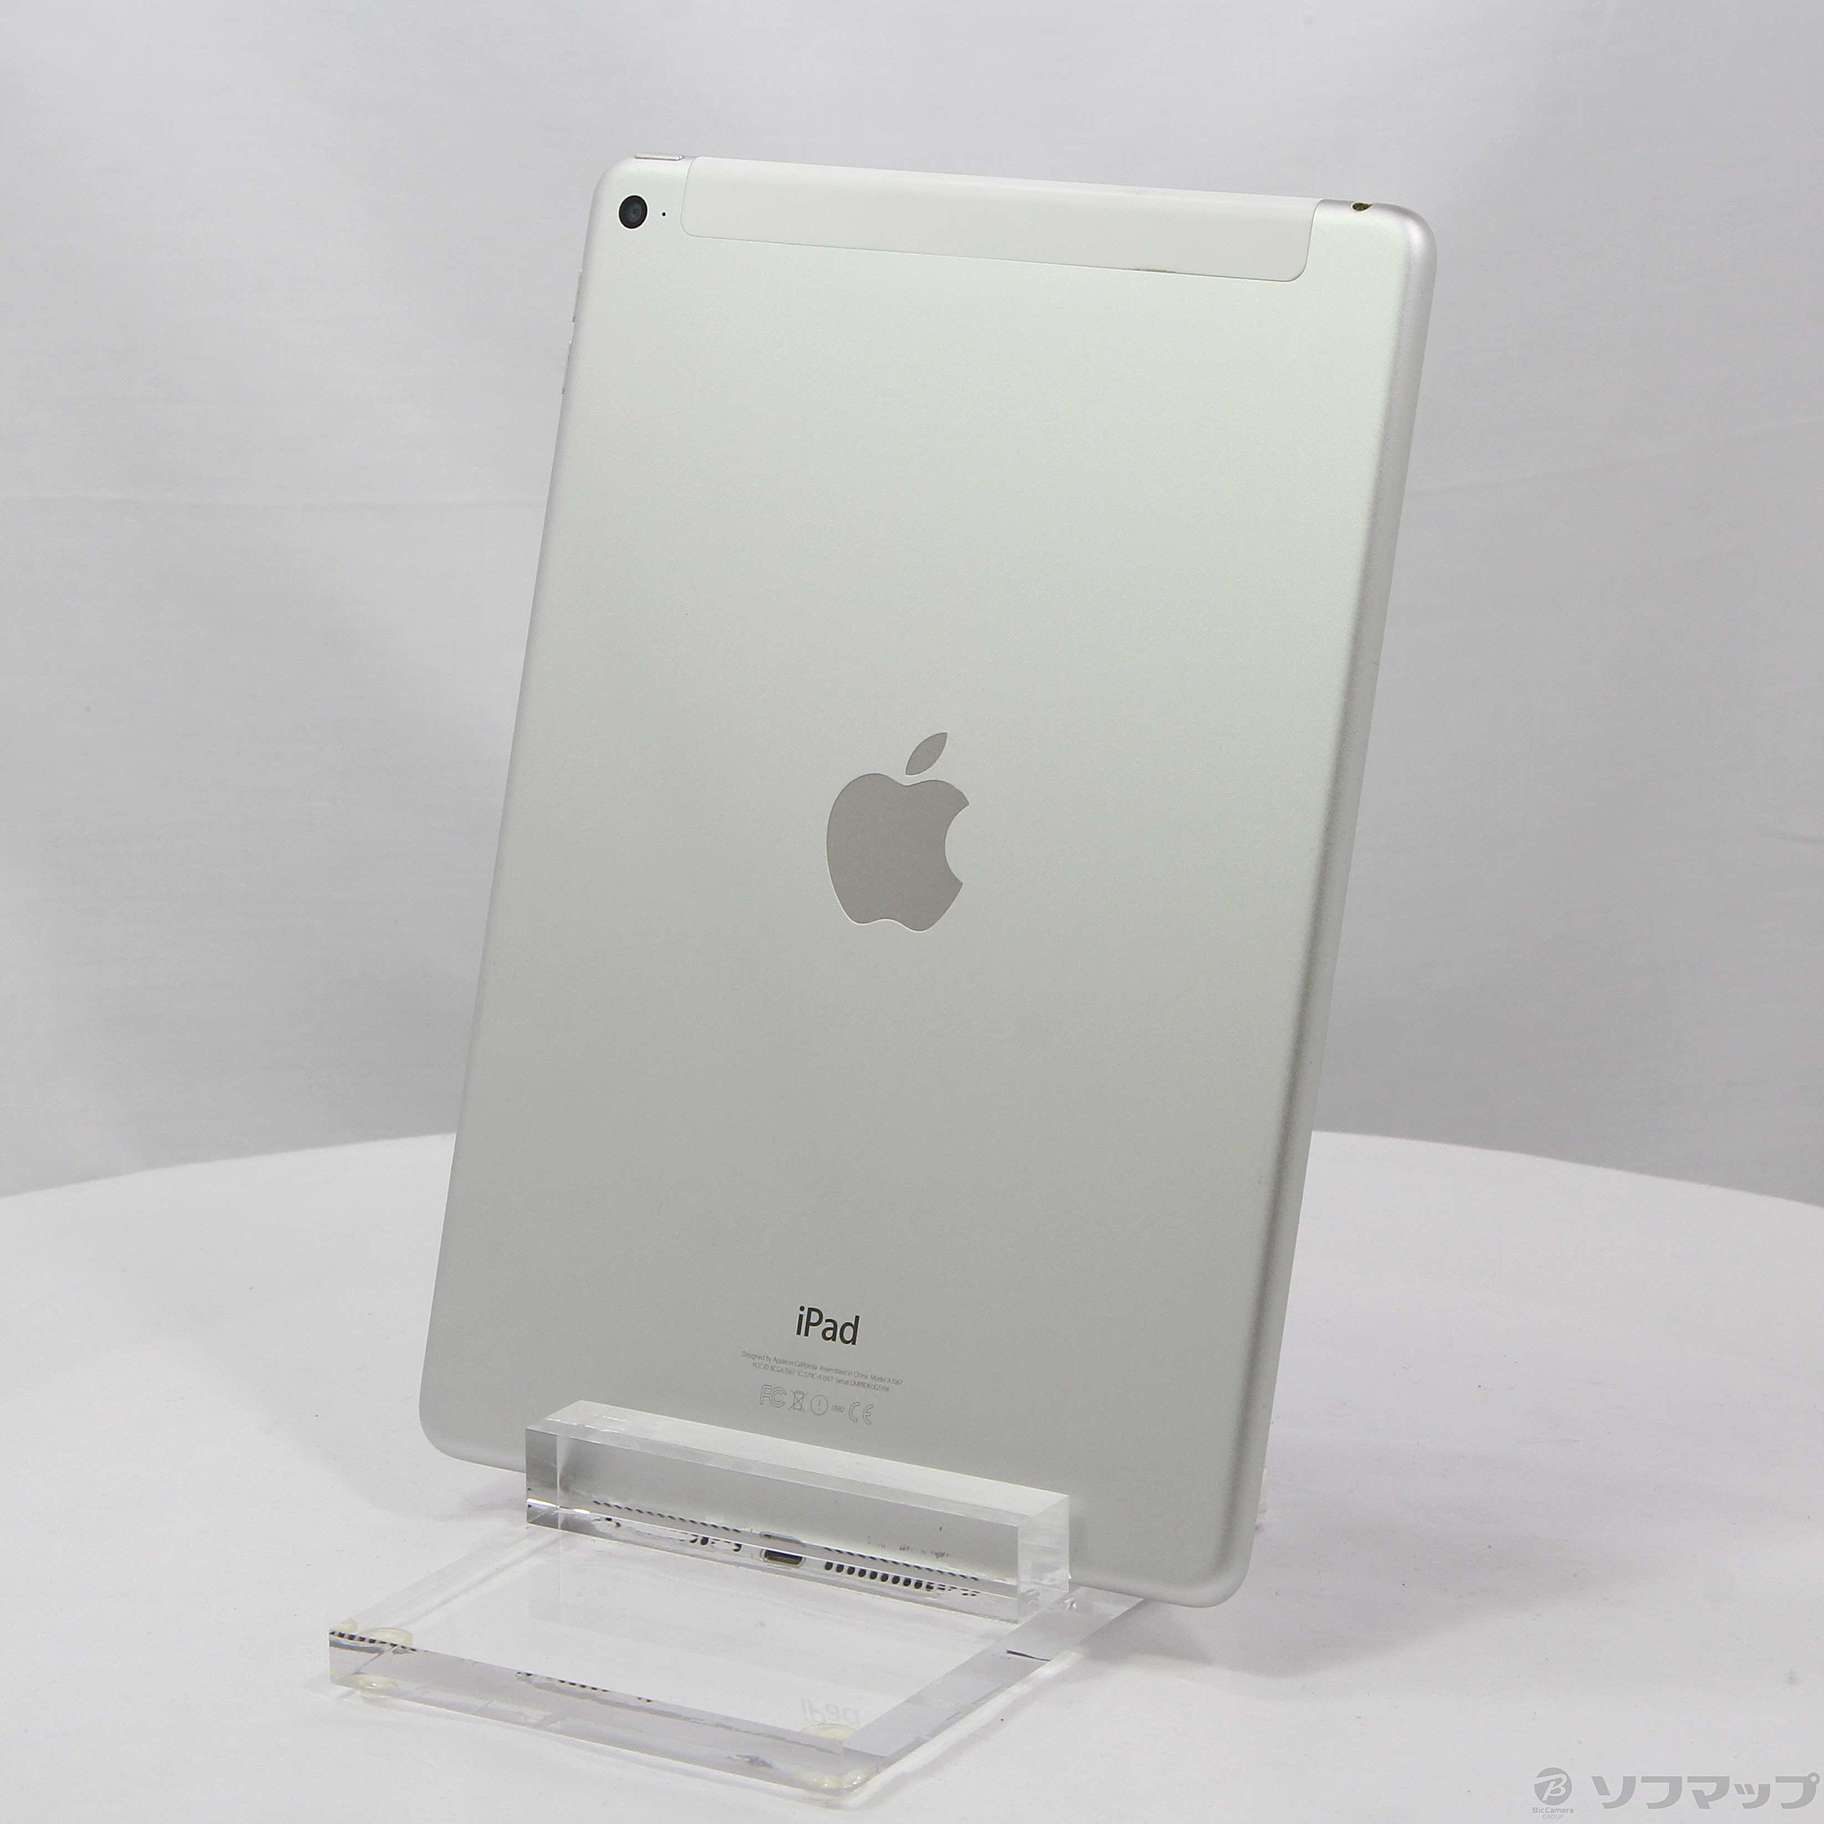 中古品iPad Air 2 64GB银MGHY2J/A au|no邮购是Sofmap[sofmap]